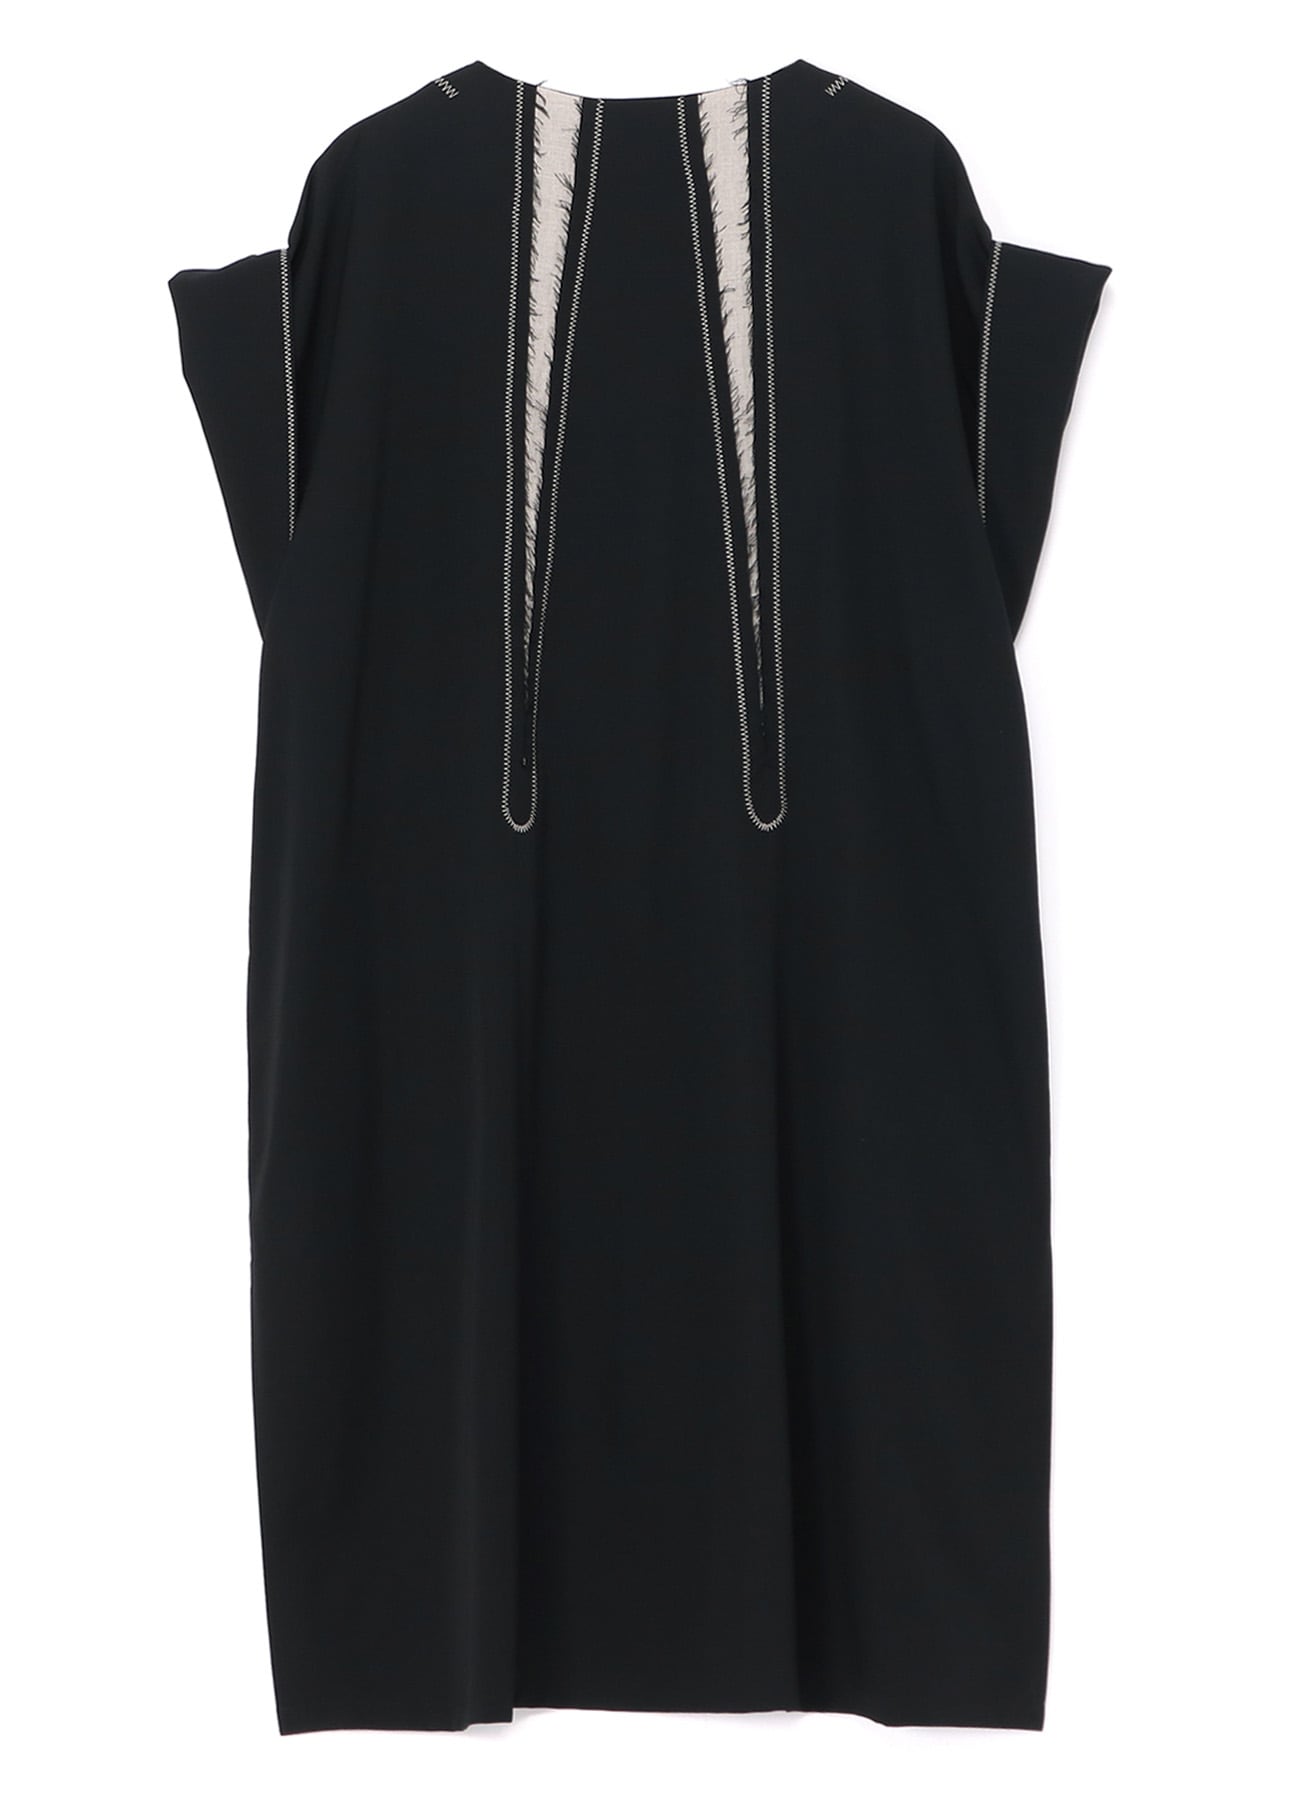 GABARDINE U-BACK EMBEDDED GUSSET DRESS(XS Black): Vintage 1.1｜THE 